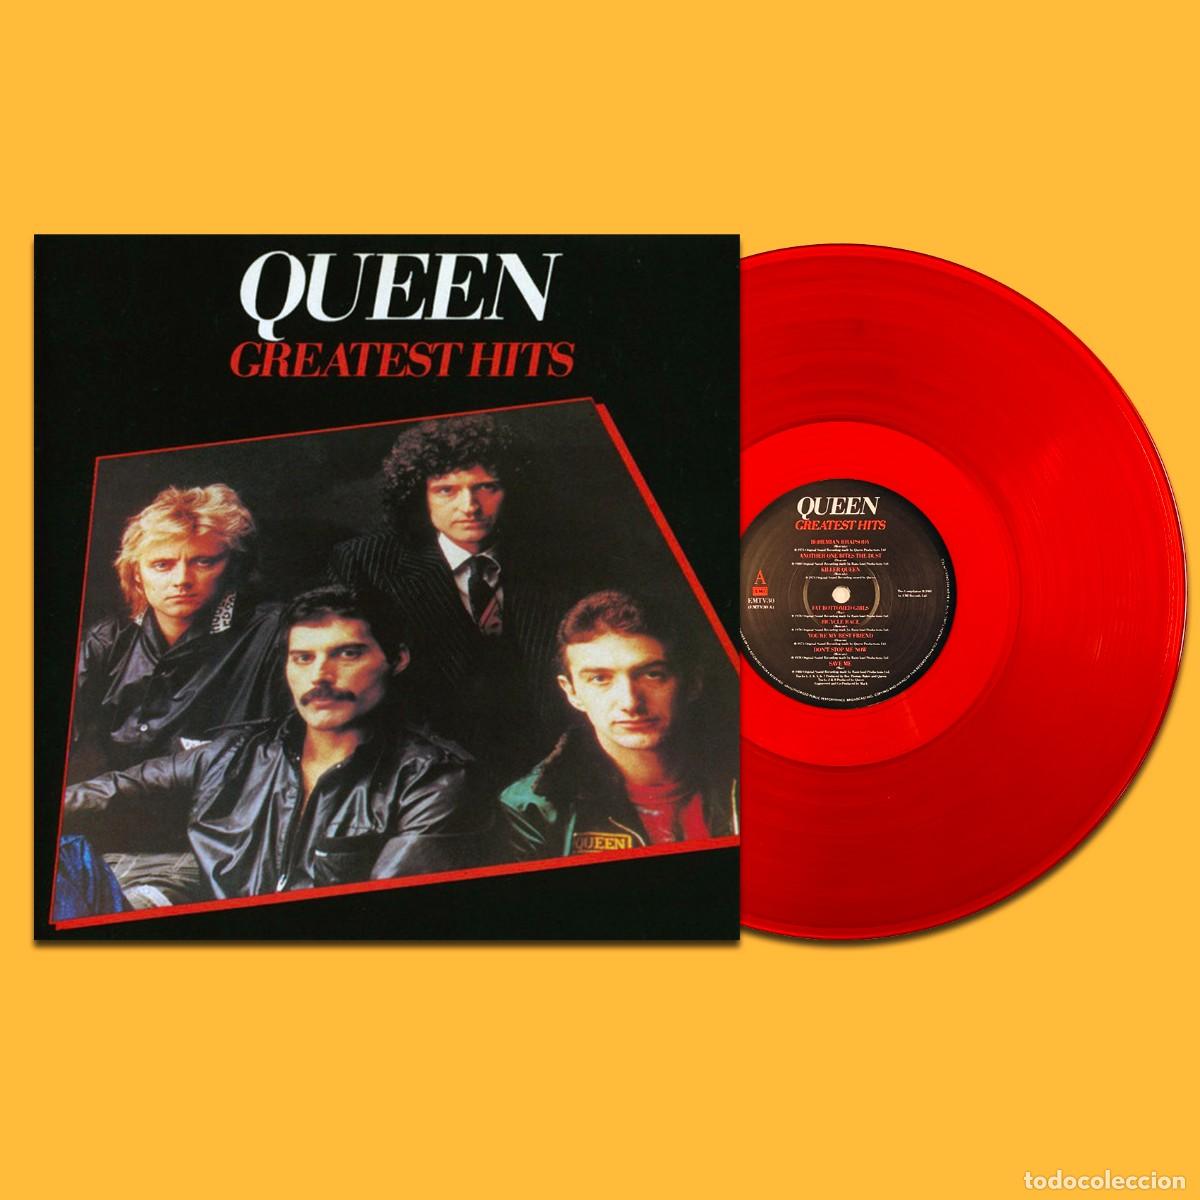 queen lp greatest hits vinilo reedición limitad - Compra venta en